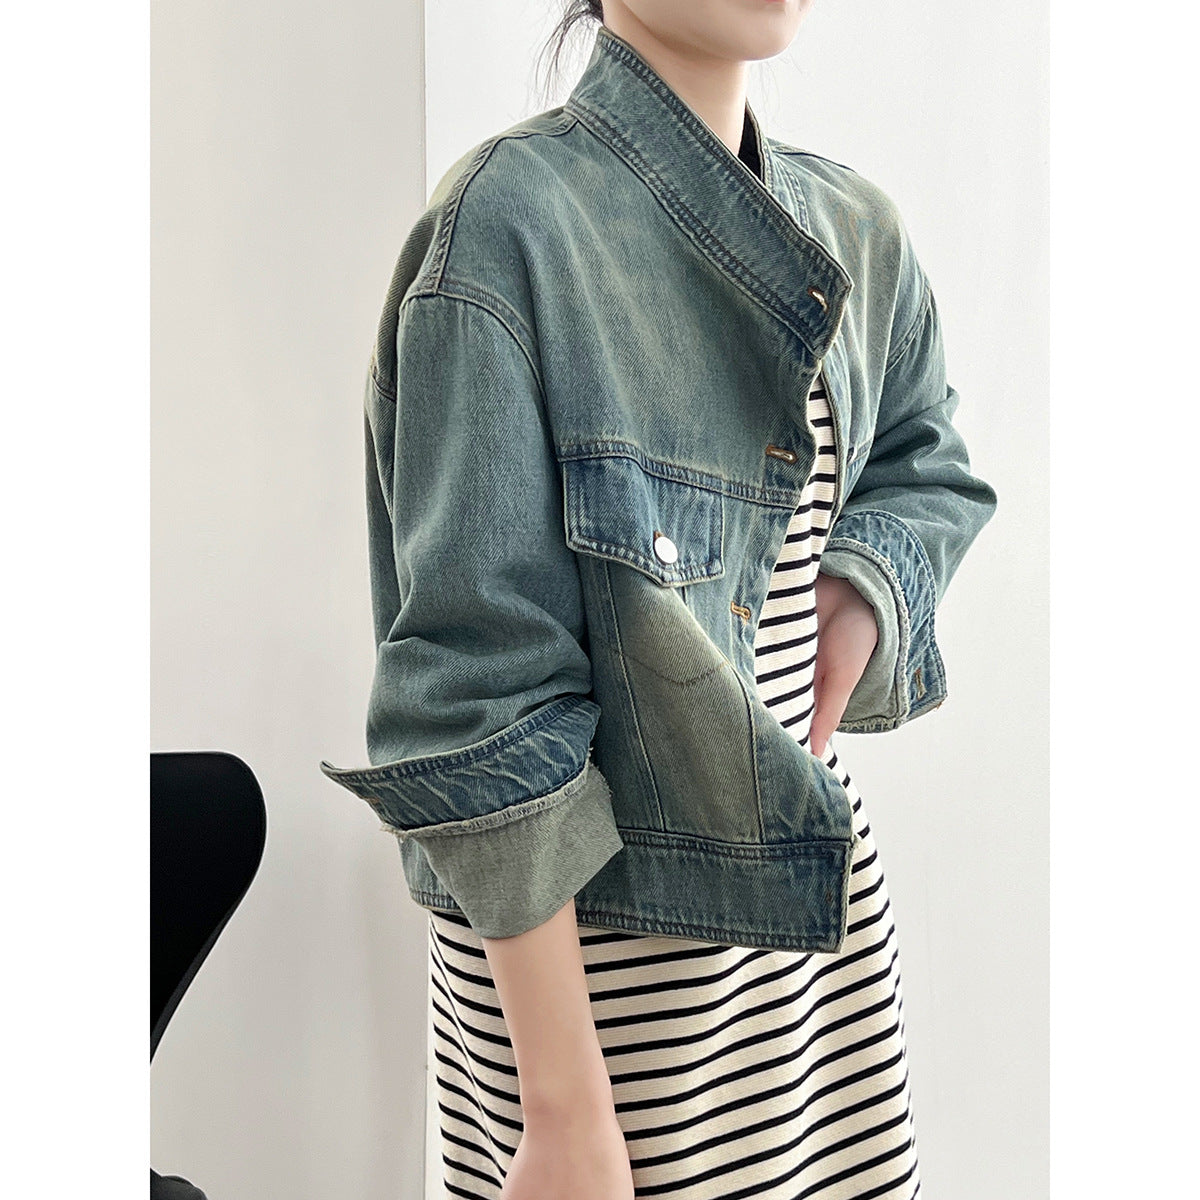 Denim Jacket Women  Short Autumn Korean Fashionable Stand Collar Design Coat